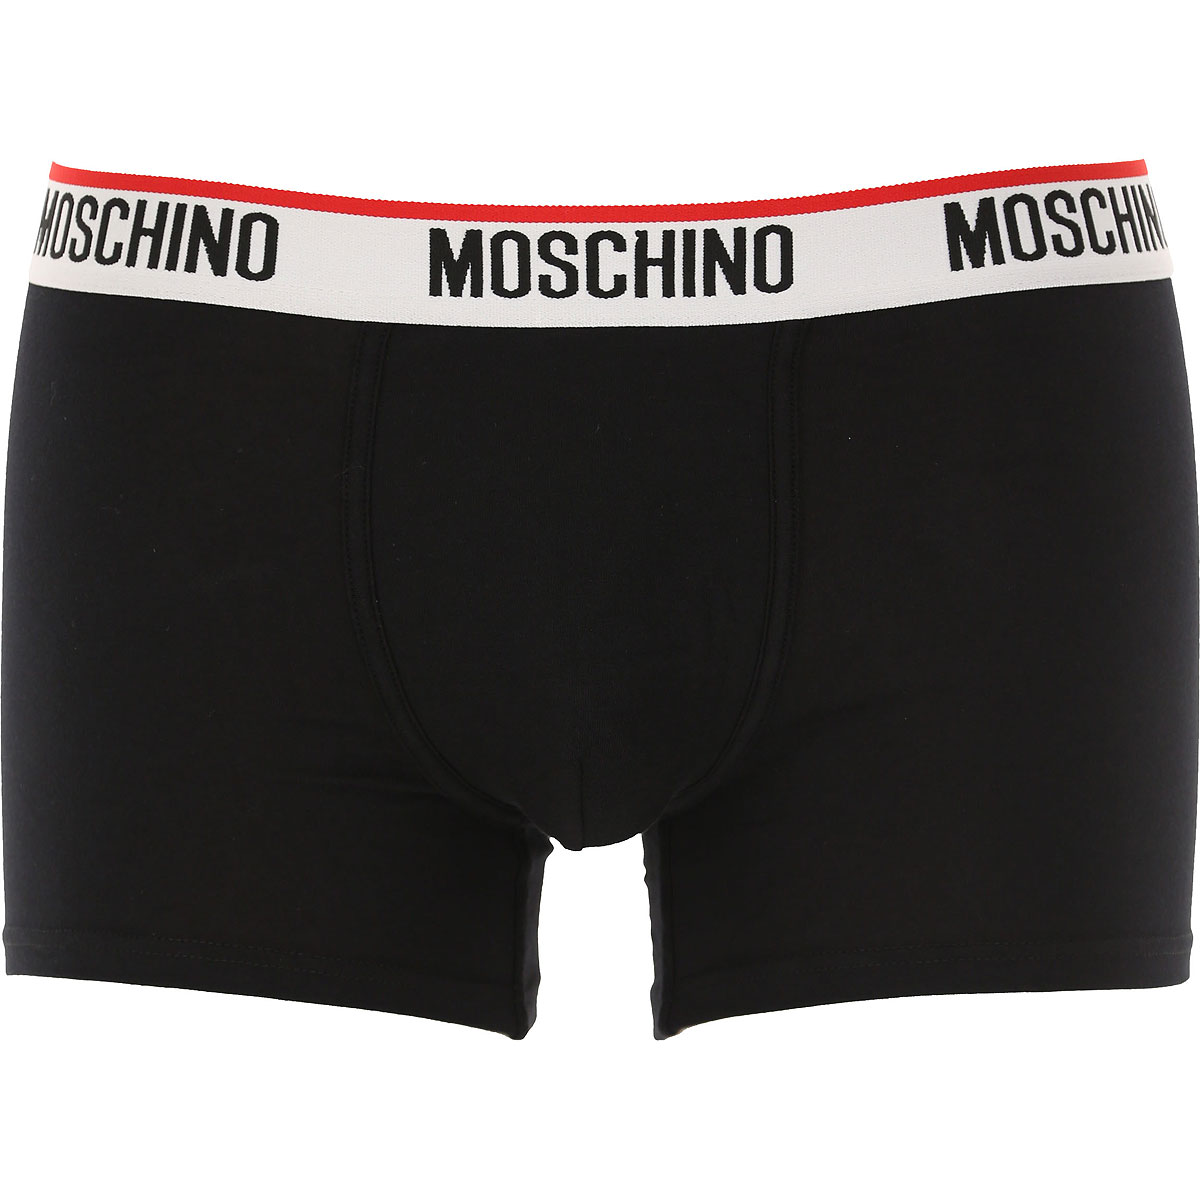 Moschino Boxer Shorts für Herren, Unterhose, Short, Boxer Günstig im Sale, Bi Pack, Schwarz, Baumwolle, 2017, L M XL XS